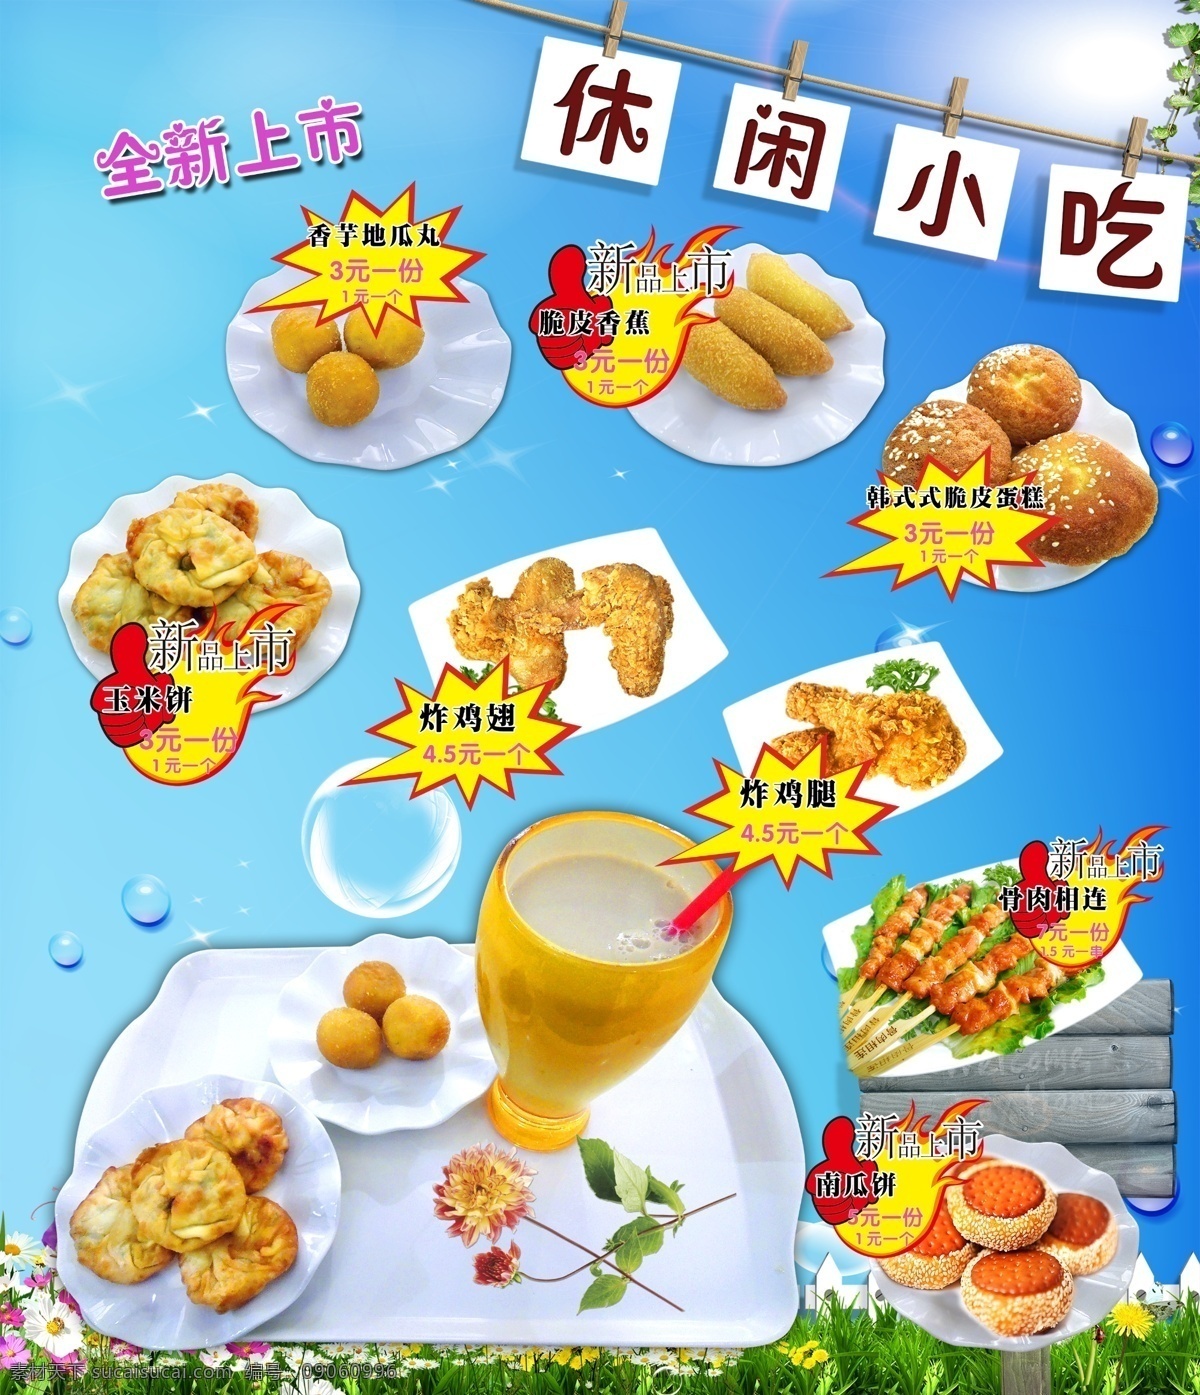 休闲小吃 全新上市 韩式 式 脆皮 蛋糕 香芋地瓜丸 玉米饼 脆皮香蕉 奶茶 原文件 广告设计模板 源文件